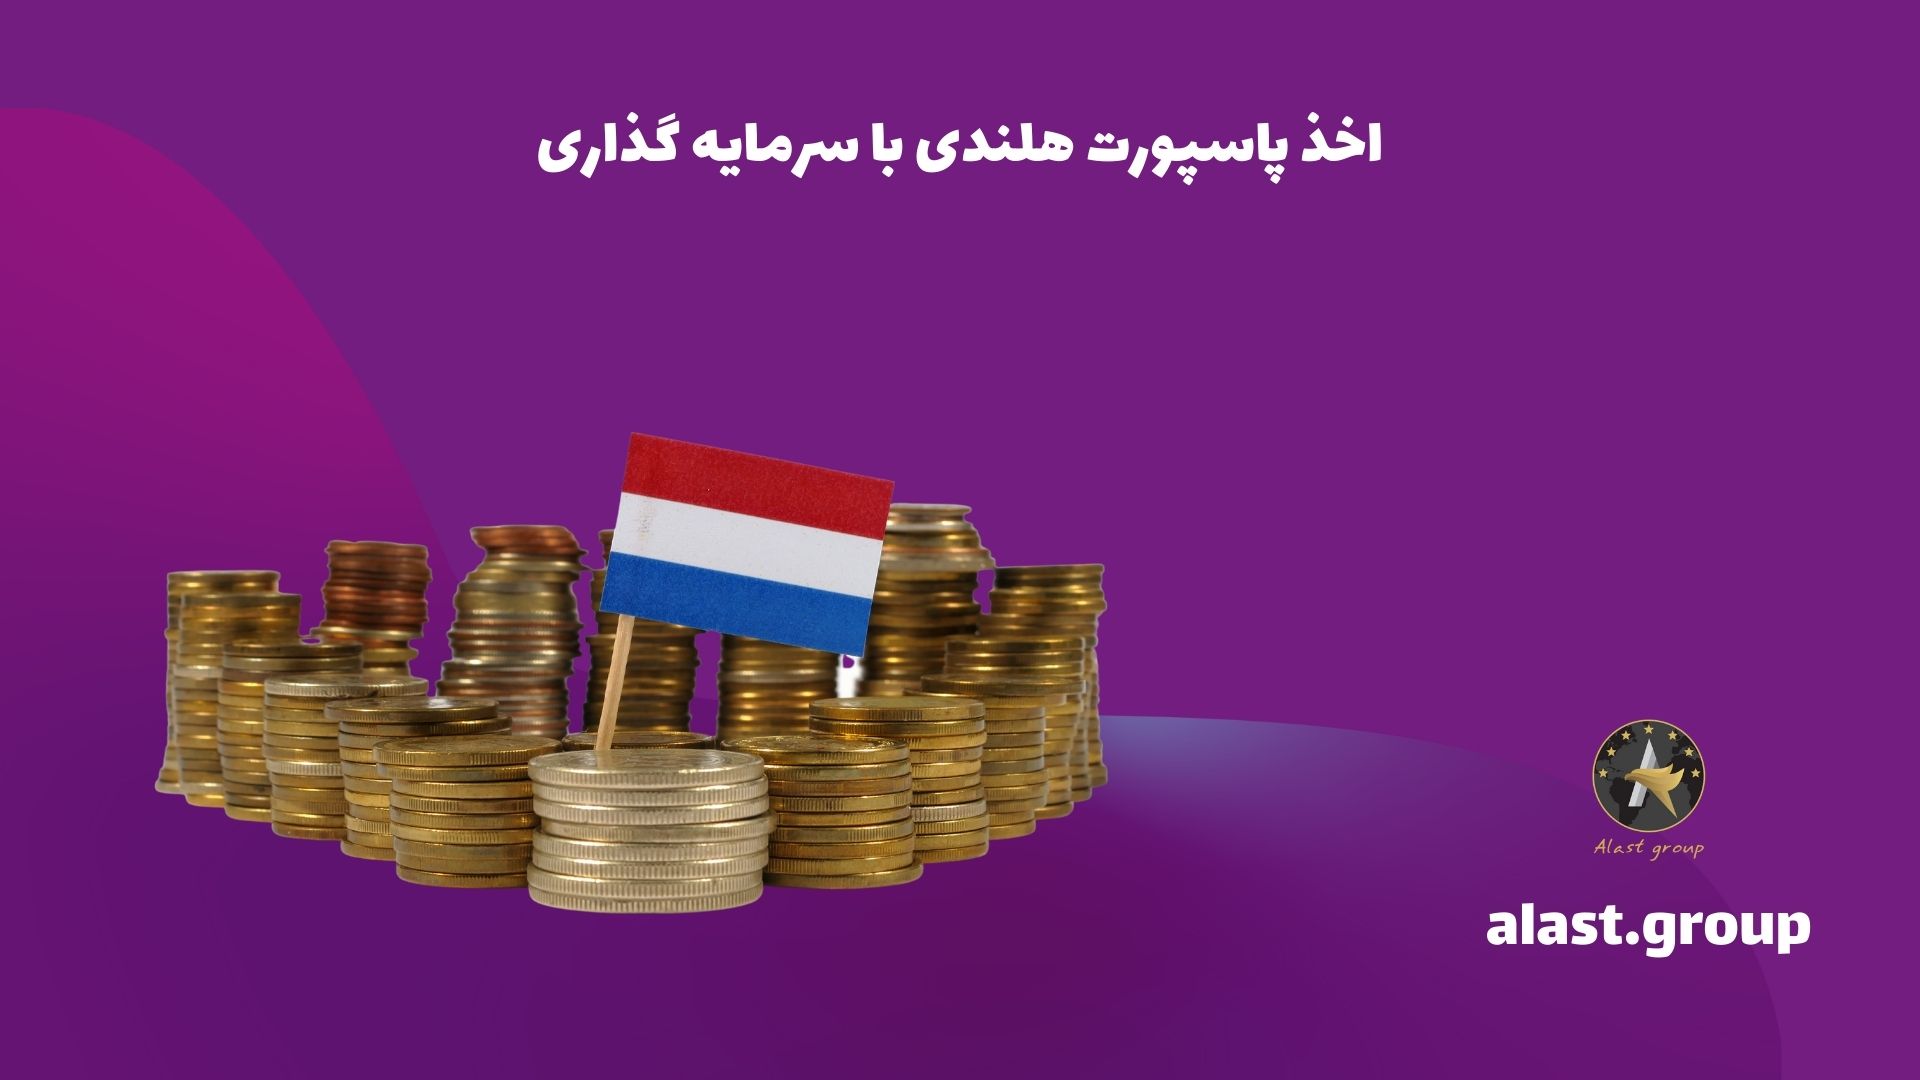 اخذ پاسپورت هلندی با سرمایه گذاری